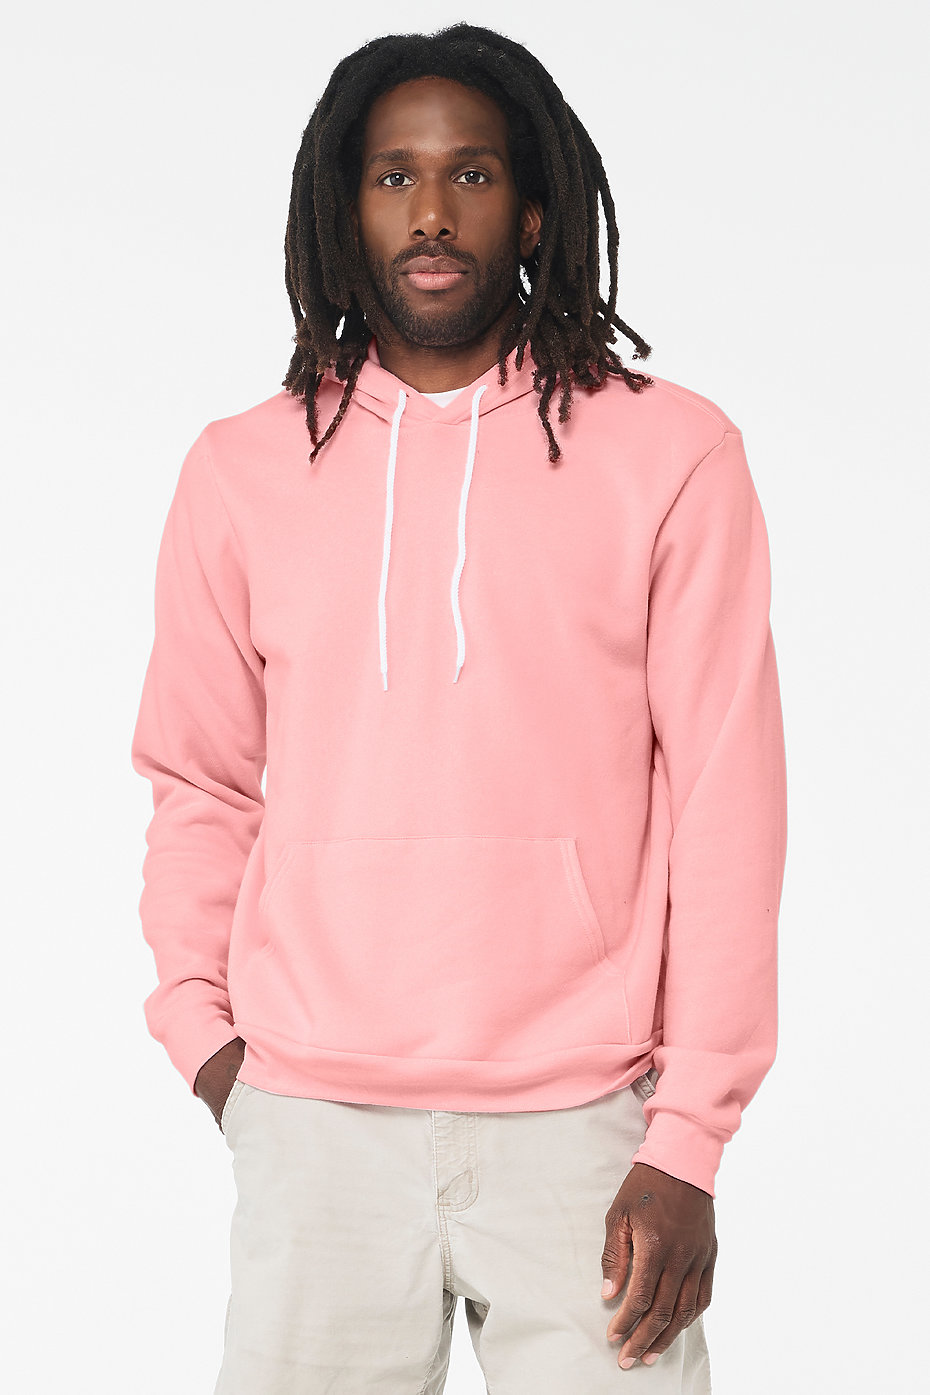 Hoodies For Men, Custom Sweatshirts, Pullover Hoodies